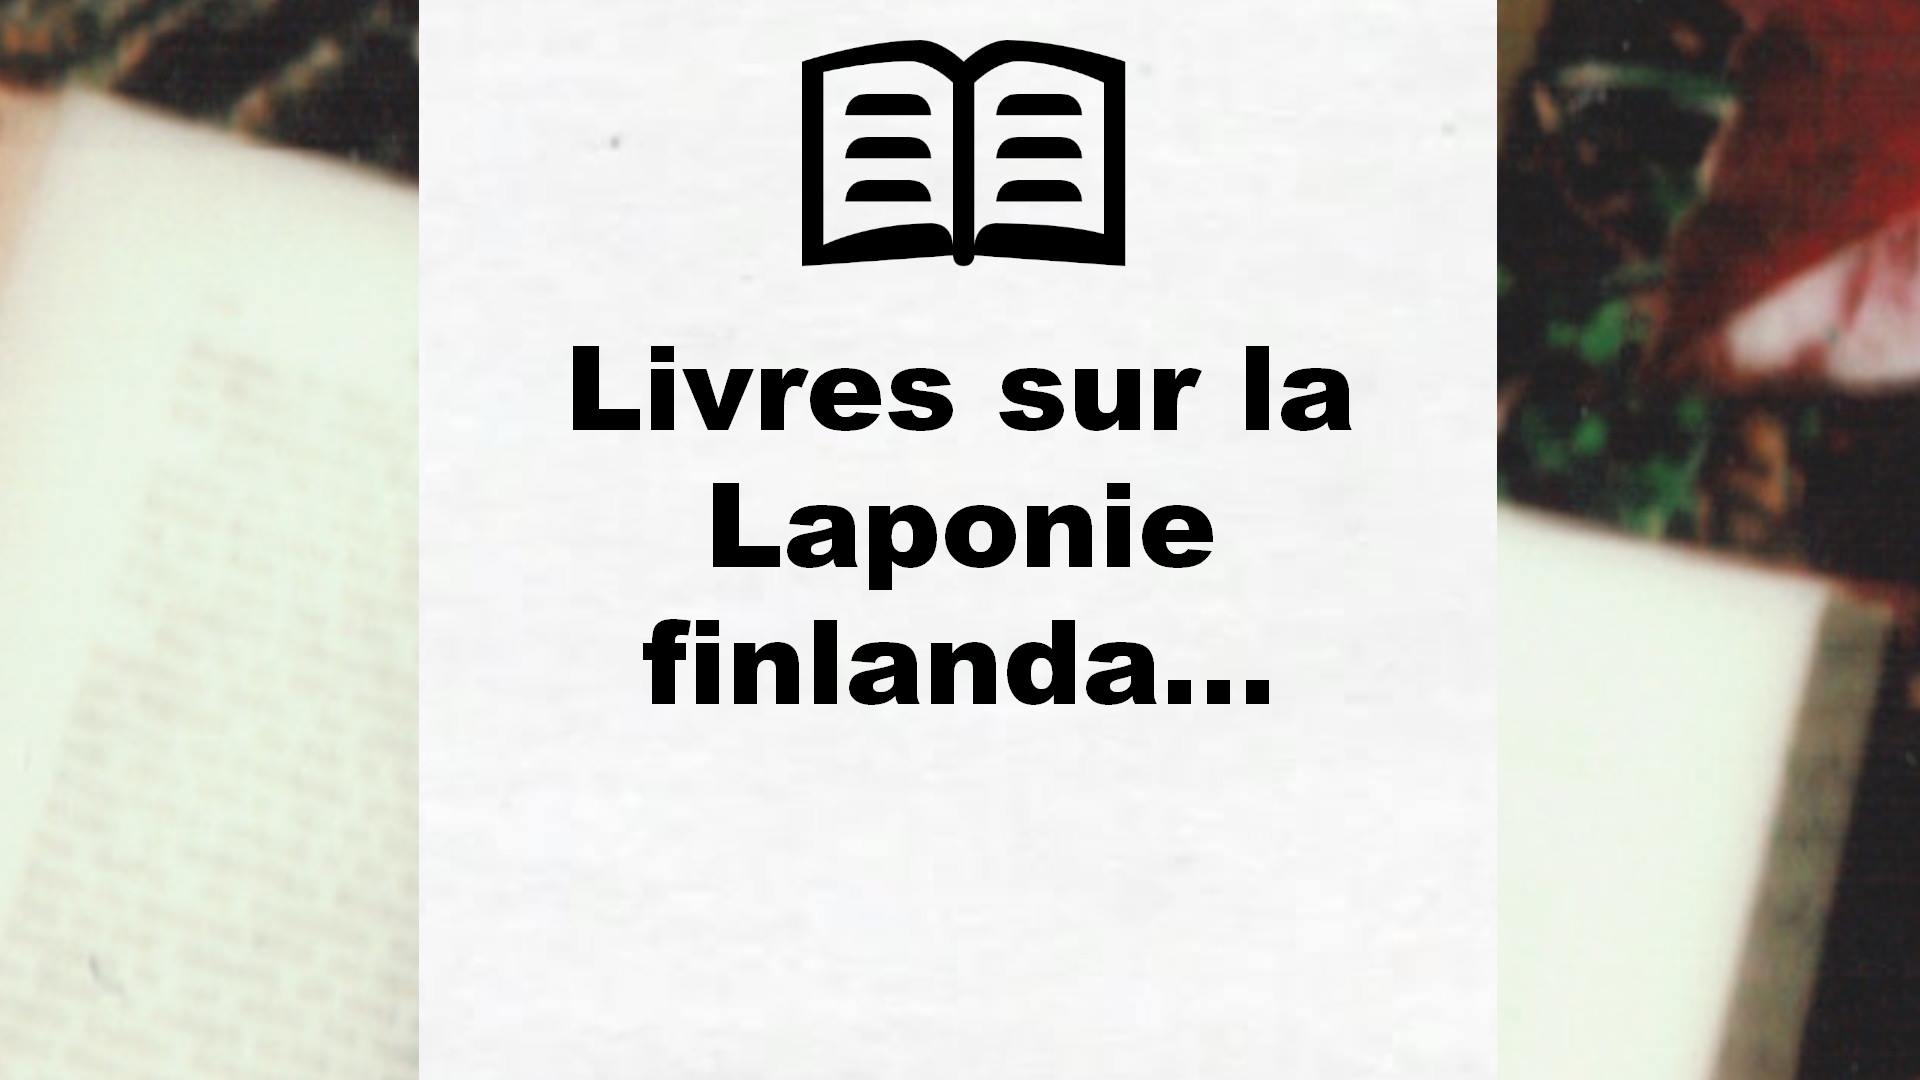 Livres sur la Laponie finlandaise